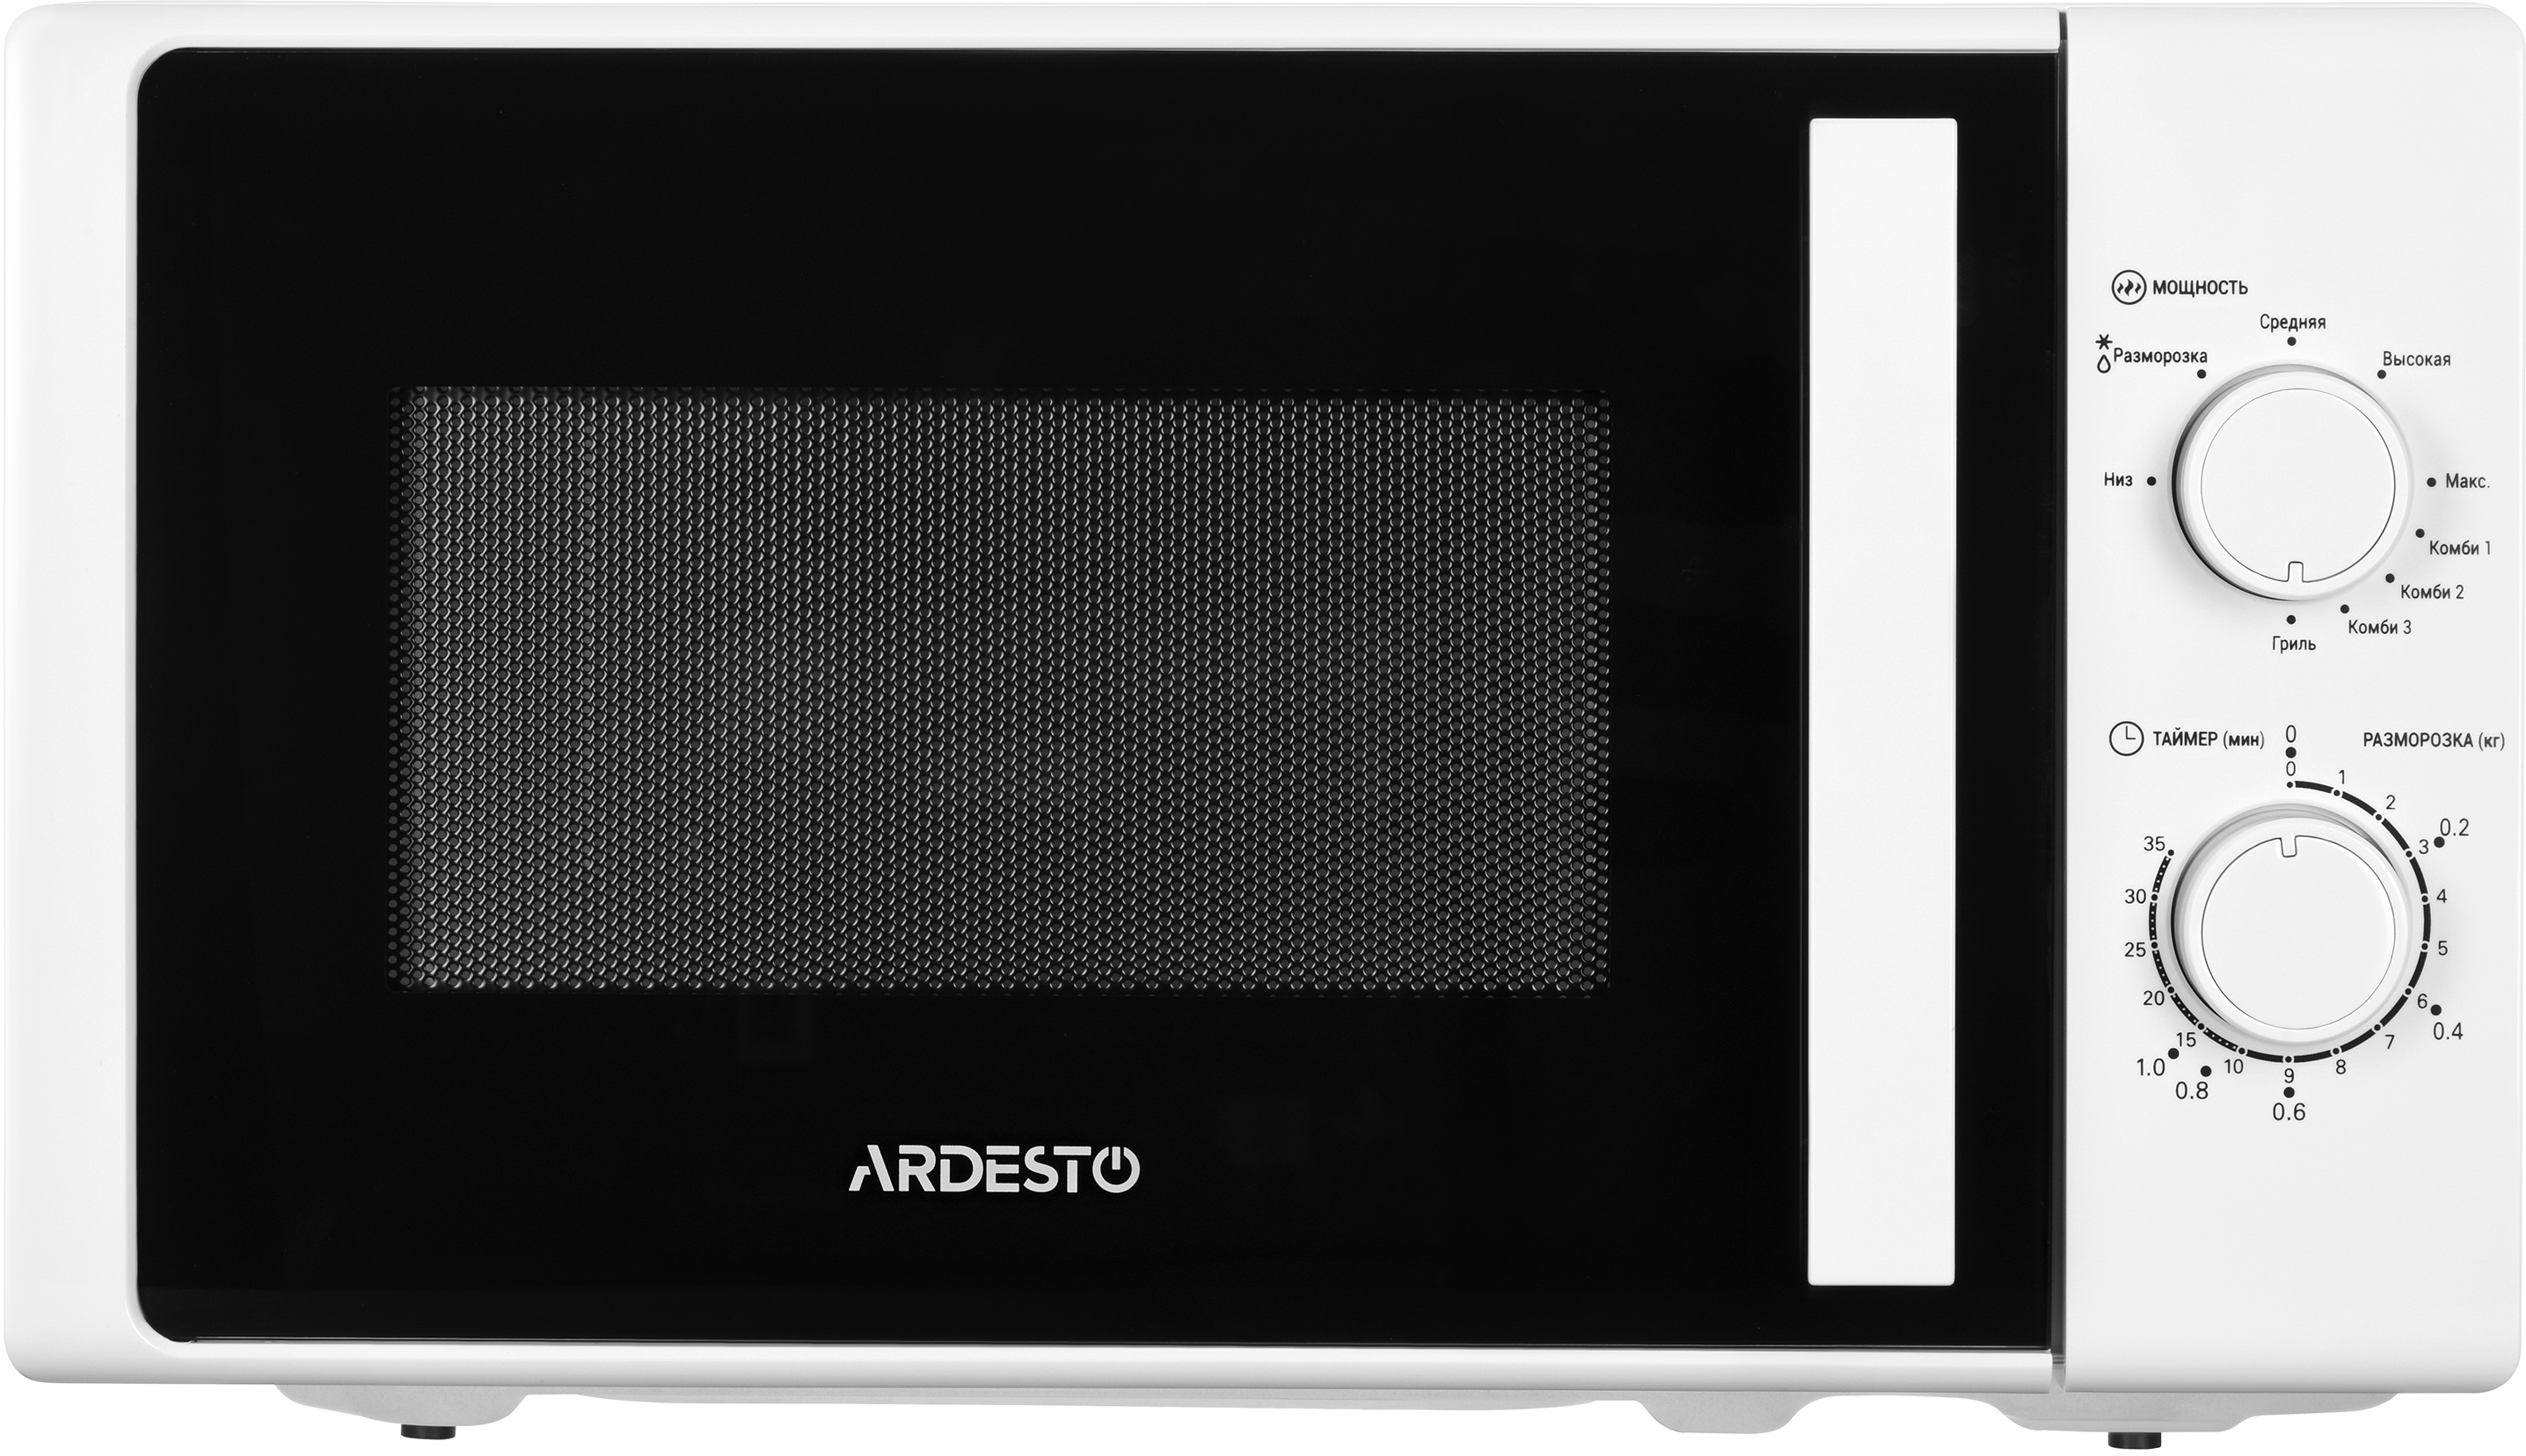 Микроволновая печь с грилем Ardesto MO-G740W цена 0.00 грн - фотография 2